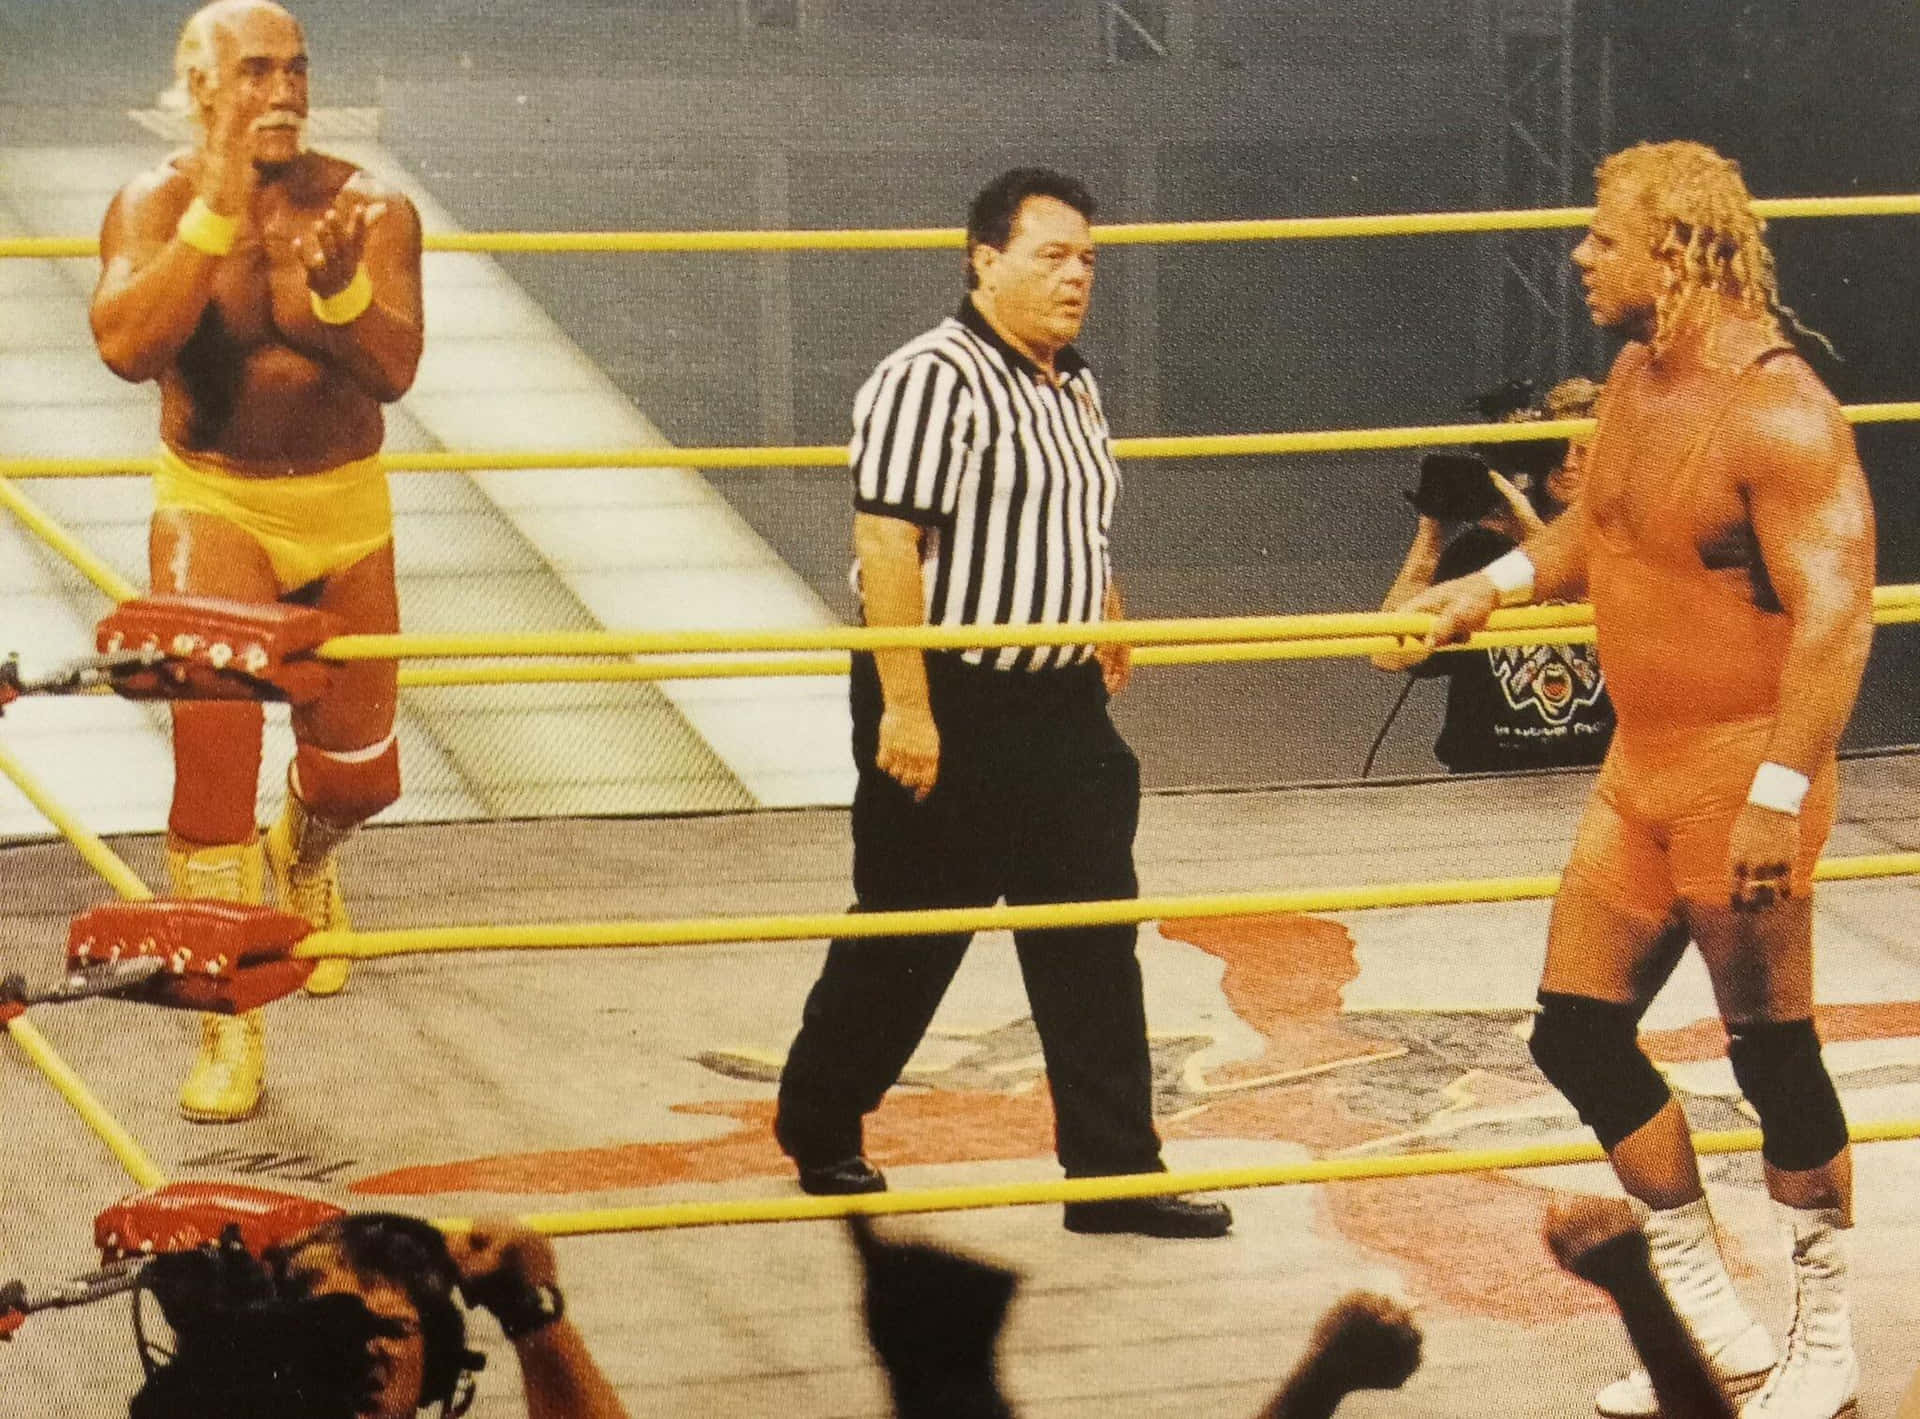 Deramerikanische Profi-wrestler Curt Hennig Gegen Hulk Hogan Wallpaper